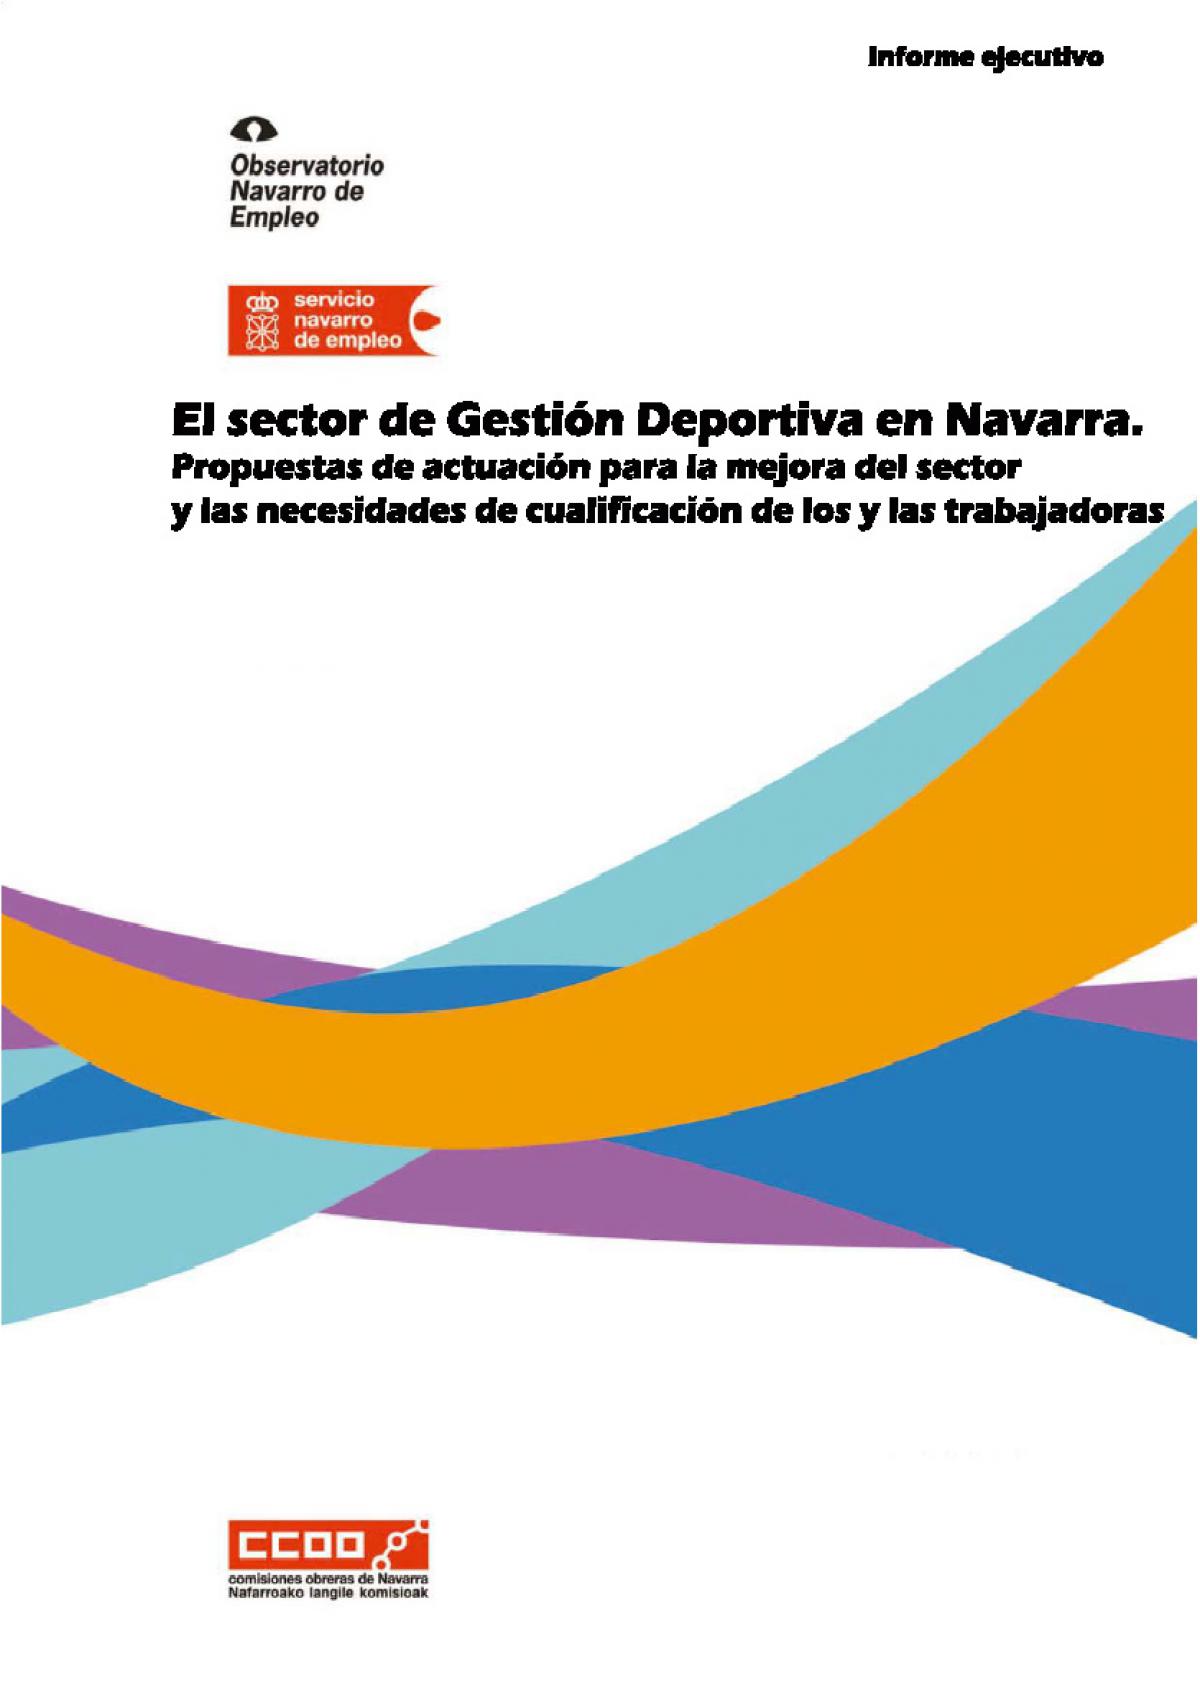 Informe sobre el Estudio del sector de Gestión Deportiva en Navarra